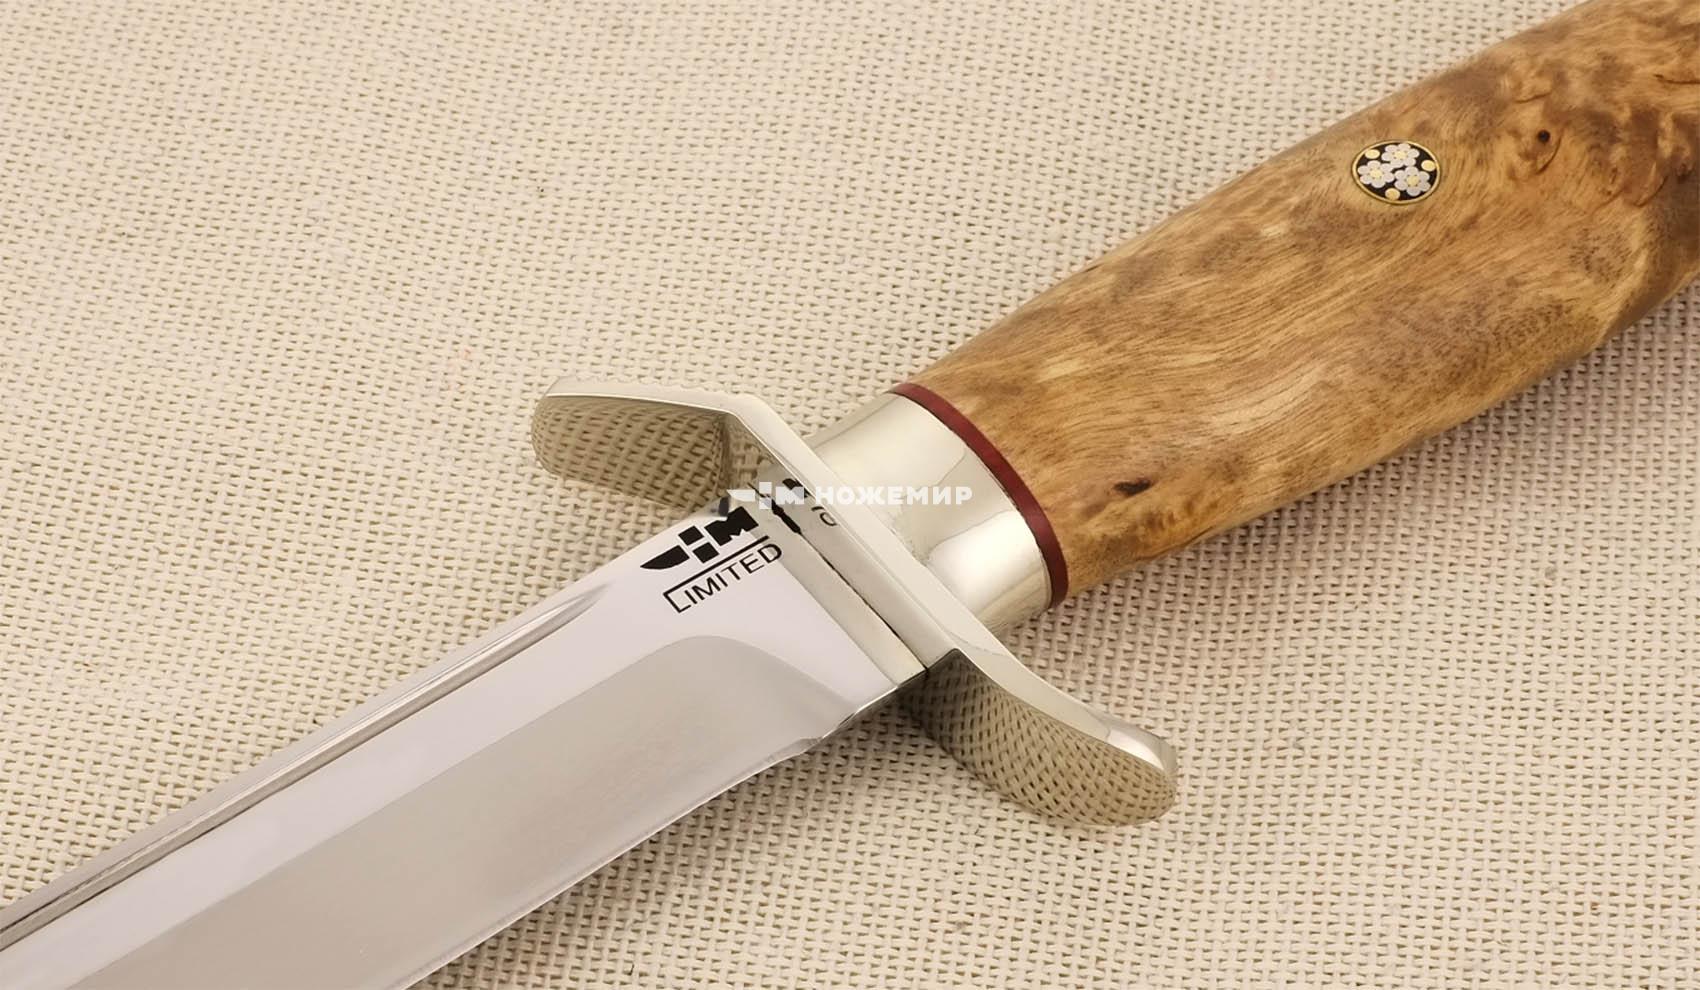 Нож Elmax ручной работы порошковая сталь Uddeholm Элмакс Ножемир Limited РАЗВЕДЧИК (4094)ELMAX